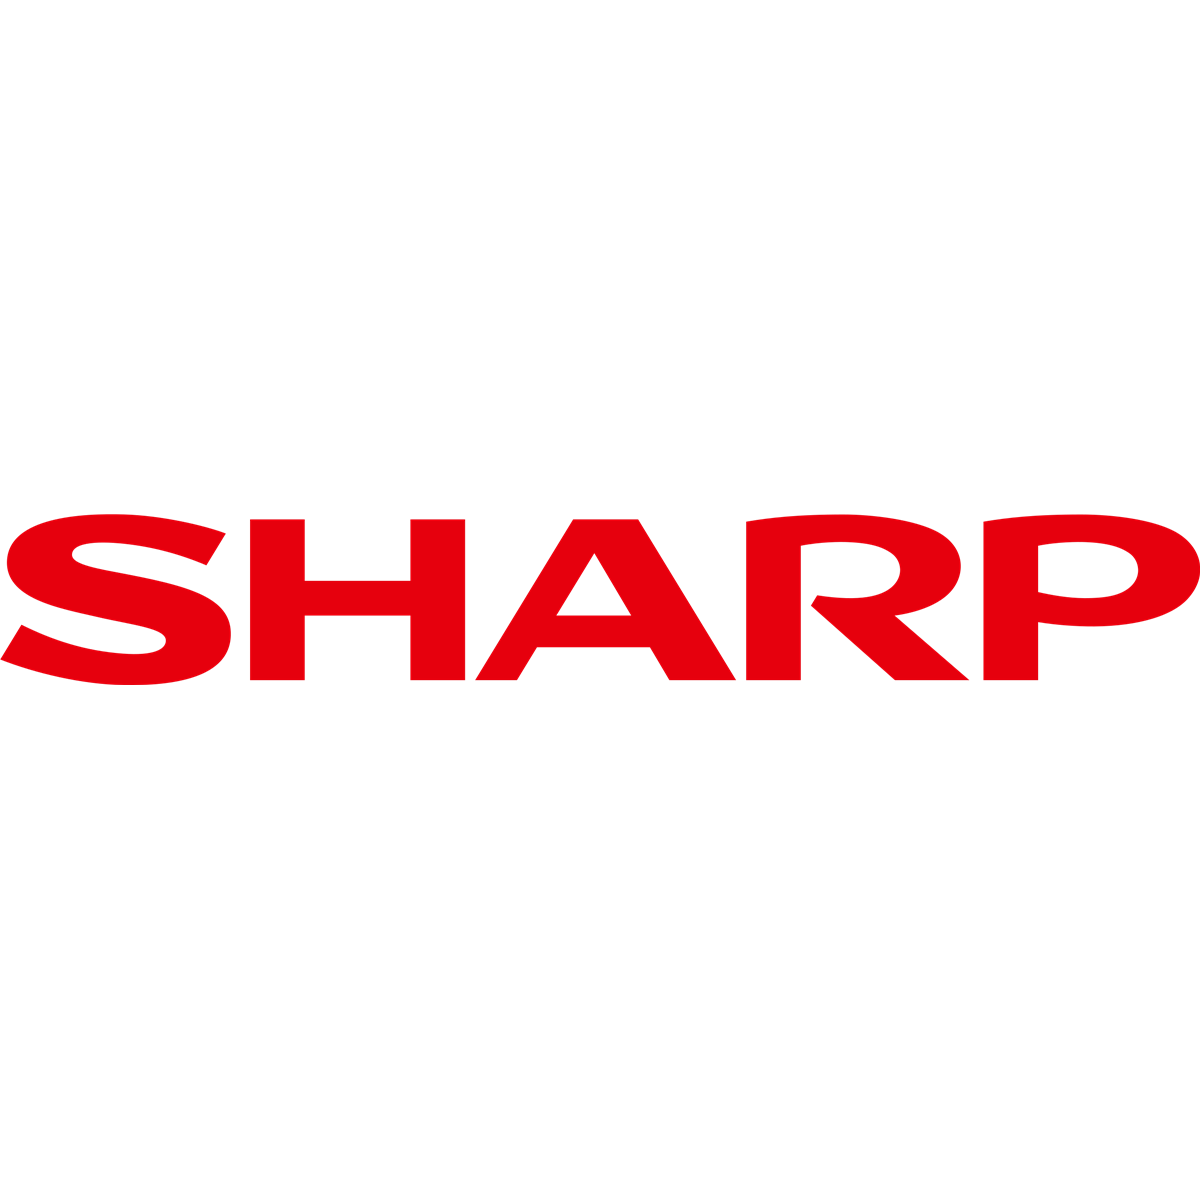 Sharp Drum Unit Pages 460/500.000 - 40,000 sheet